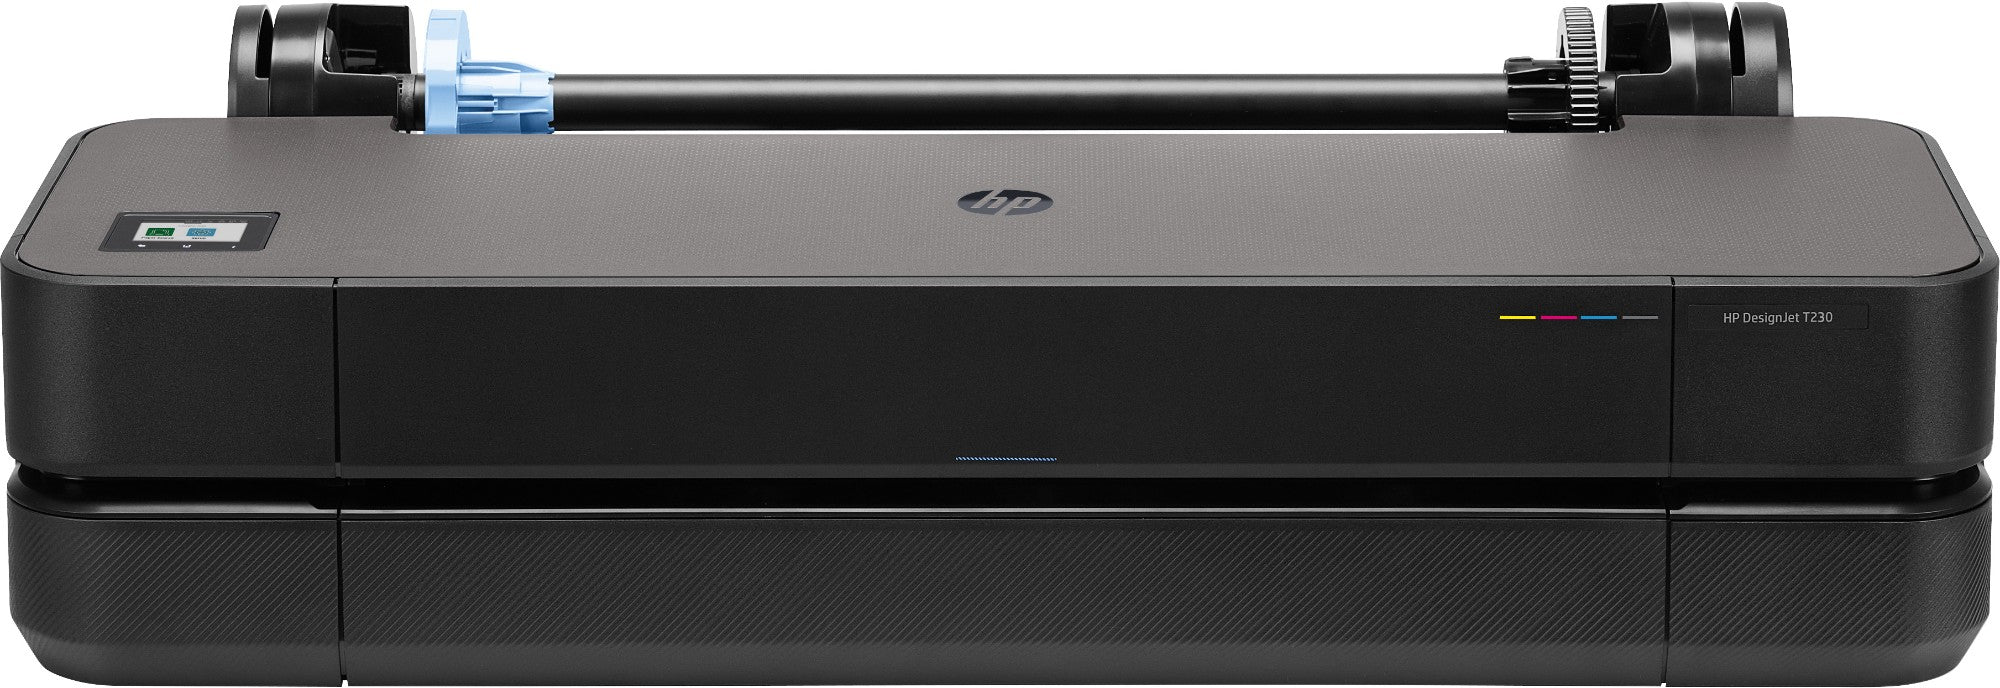 HP Designjet T230 Large Format Printer Wi-Fi Thermal Inkjet Colour 2400 X 1200 DPI A1 (594 X 841 Mm) Ethernet LAN-(5HB07A#B19)